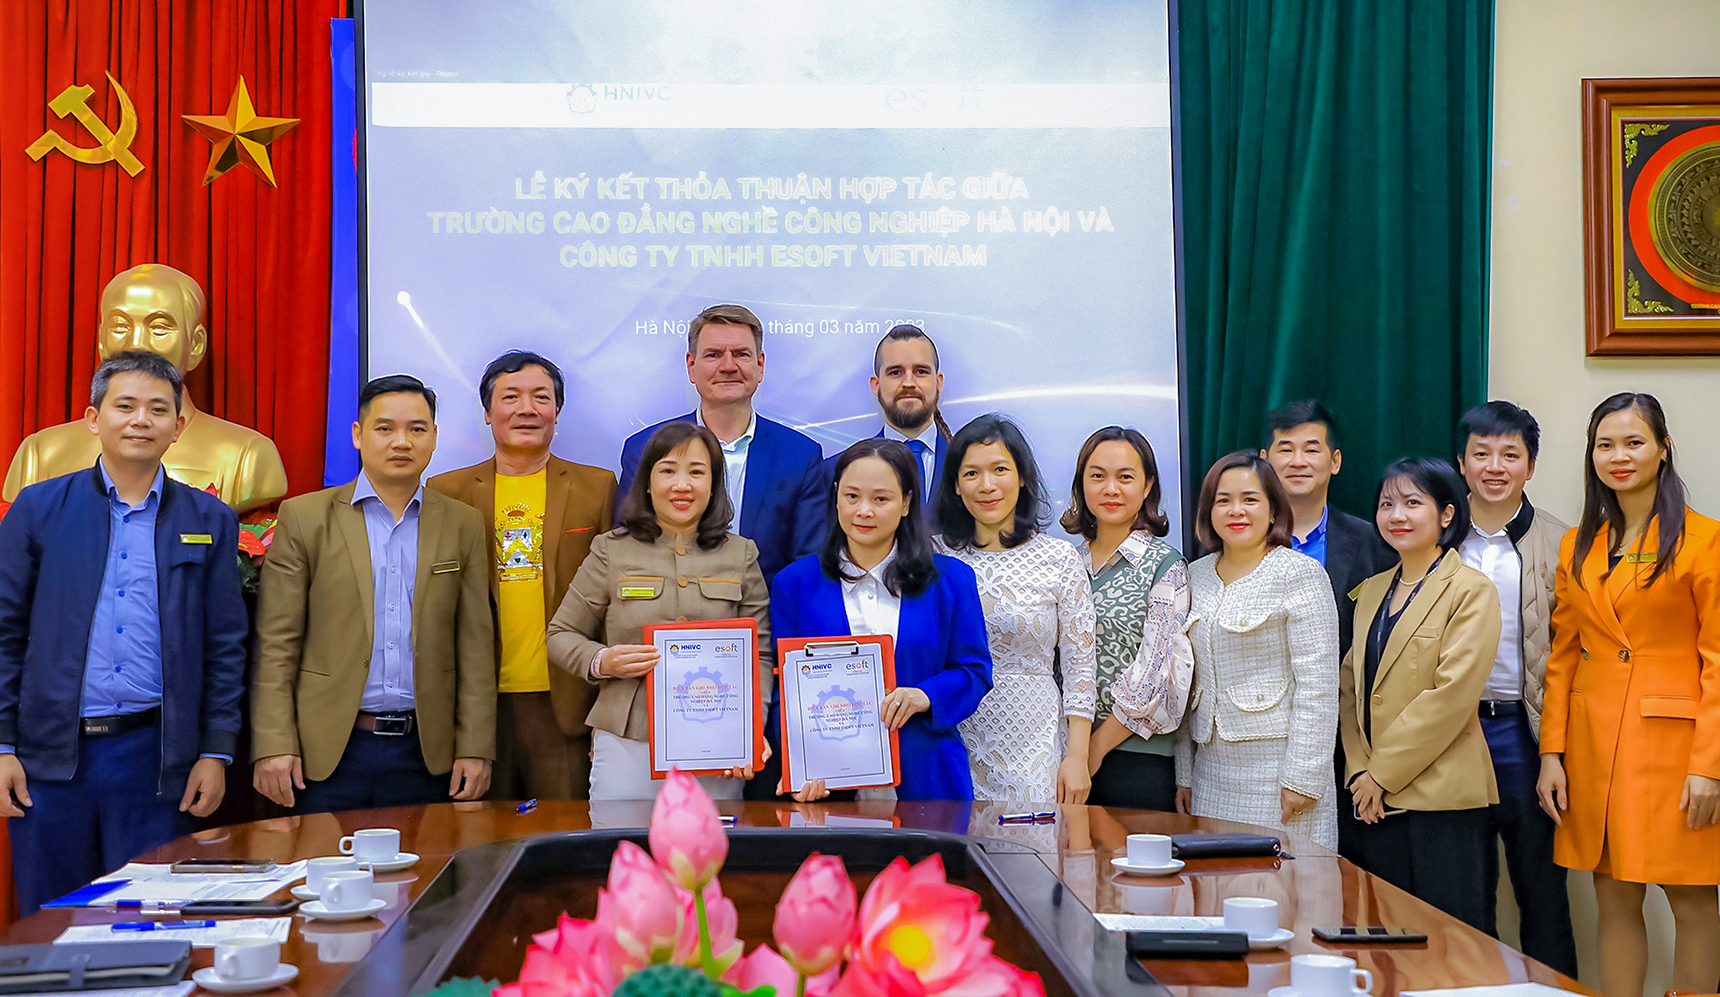 Lễ ký kết thoả thuận hợp tác giữa trường cao đẳng nghề công nghiệp hà nội và công ty tnhh esoft vietnam